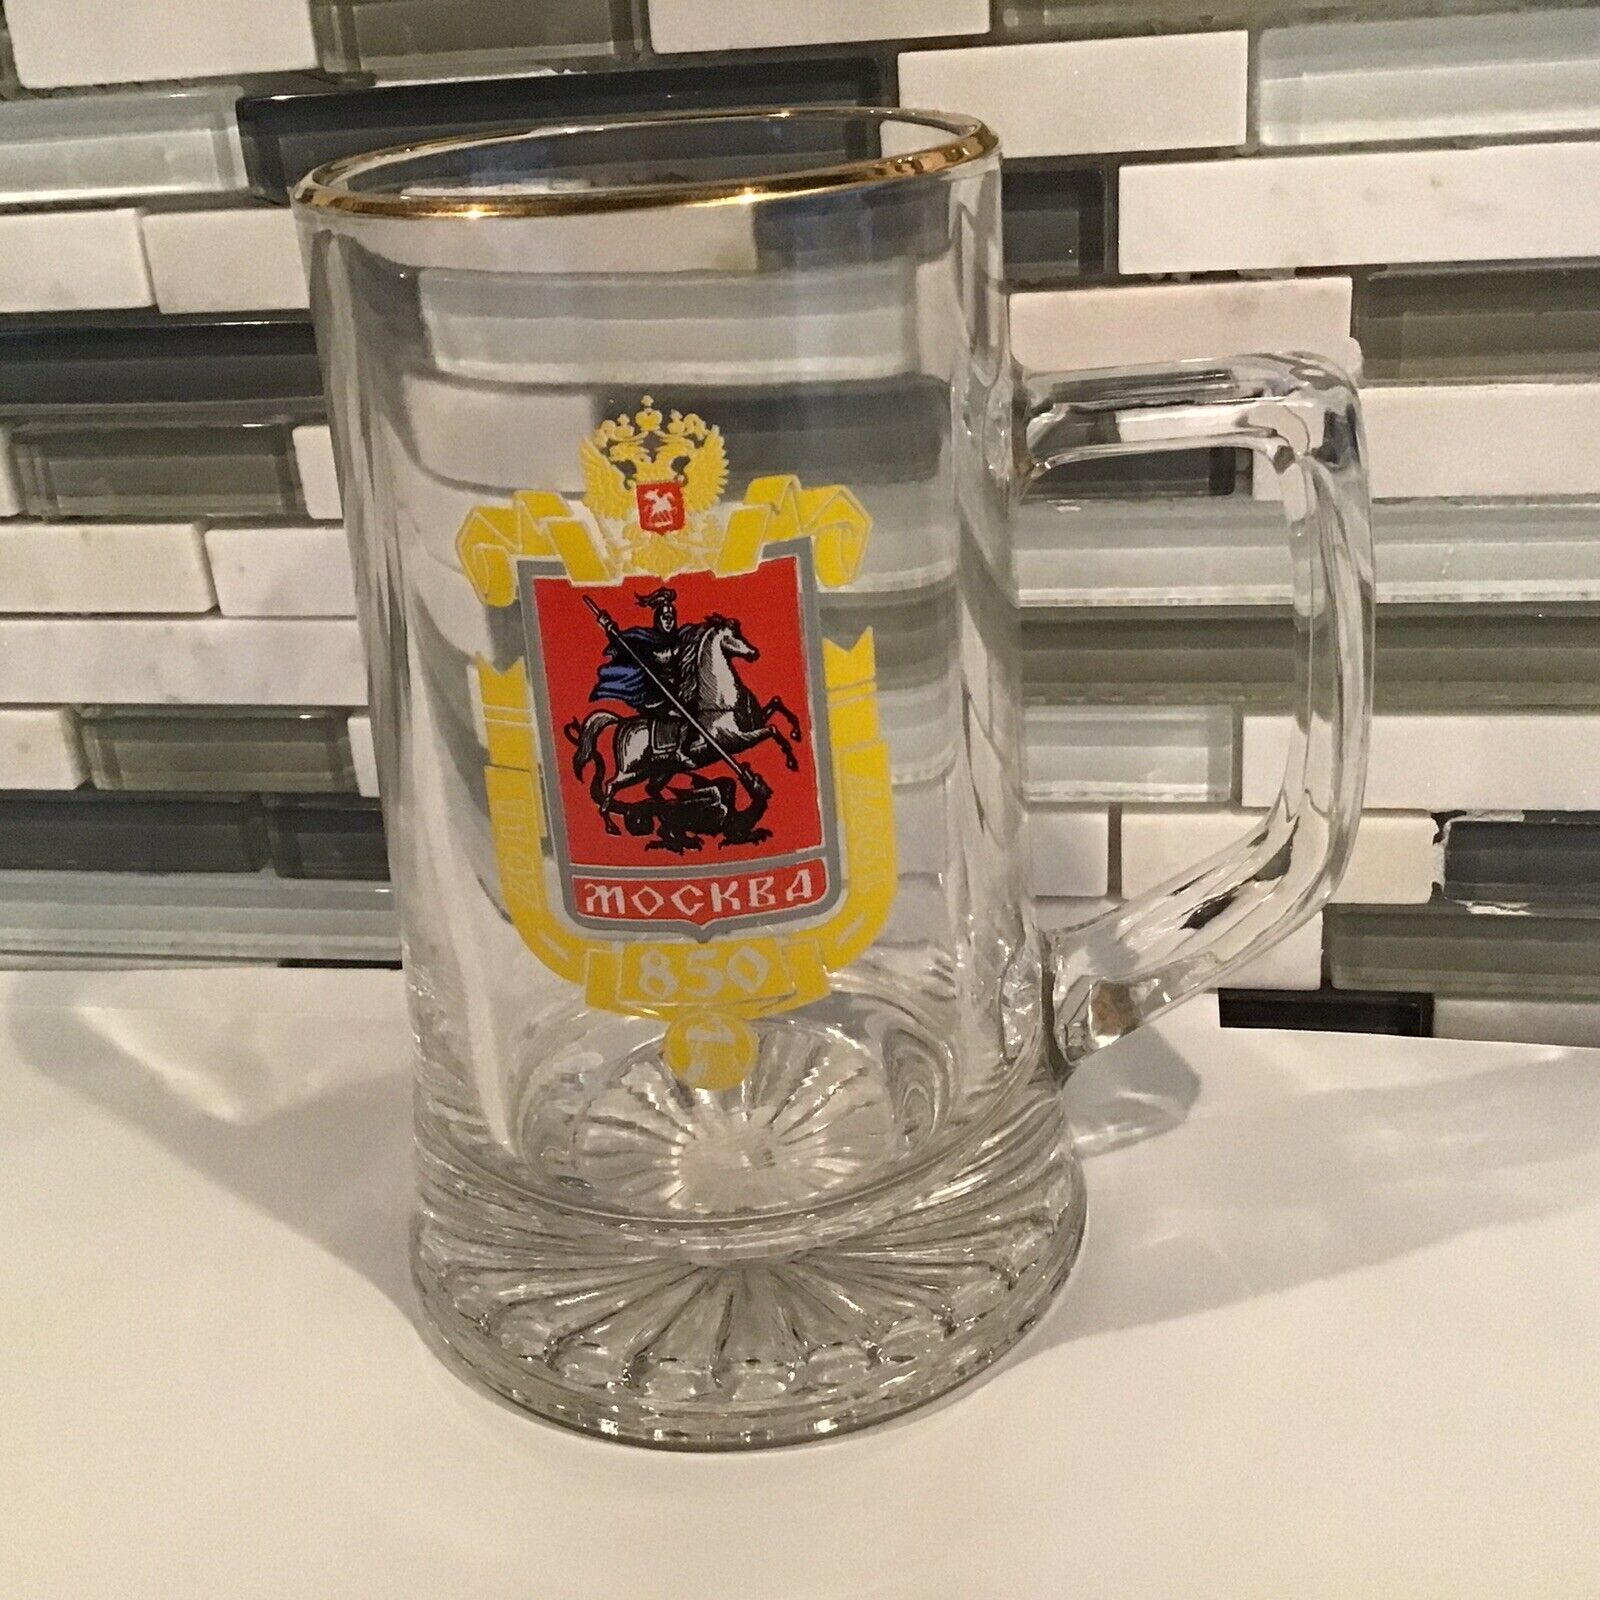 Mockba 850 1147 1997 Clear Glass Beer Mug Gold Trim 